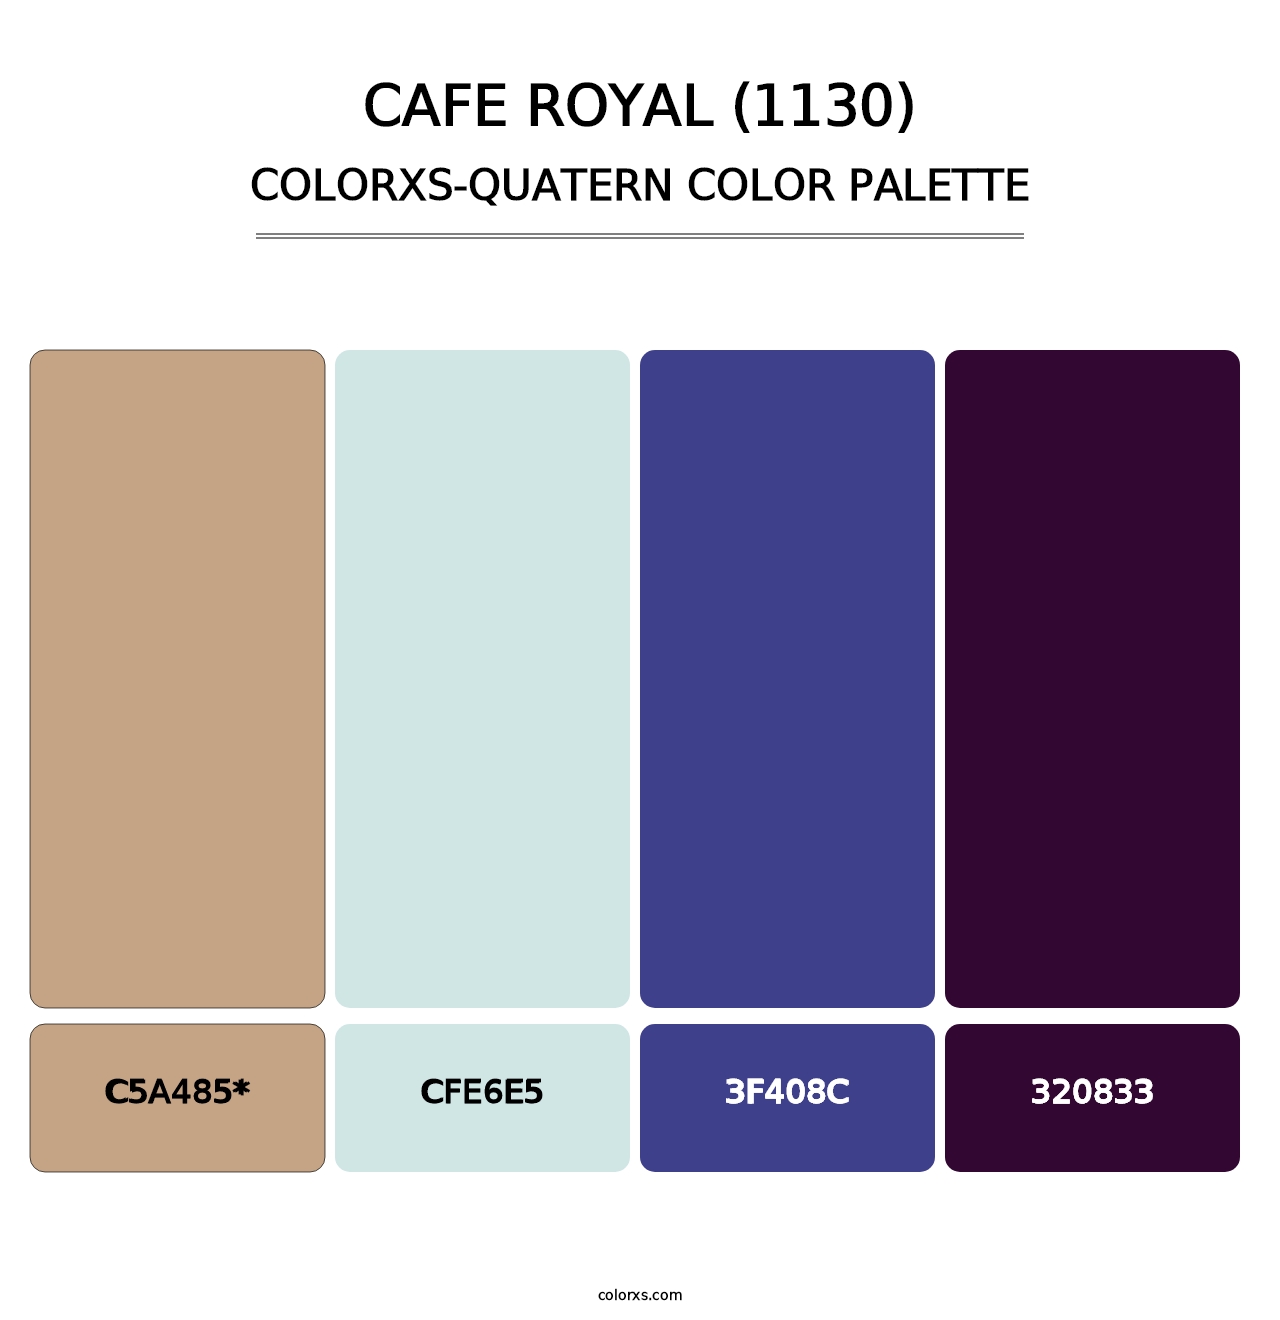 Cafe Royal (1130) - Colorxs Quatern Palette